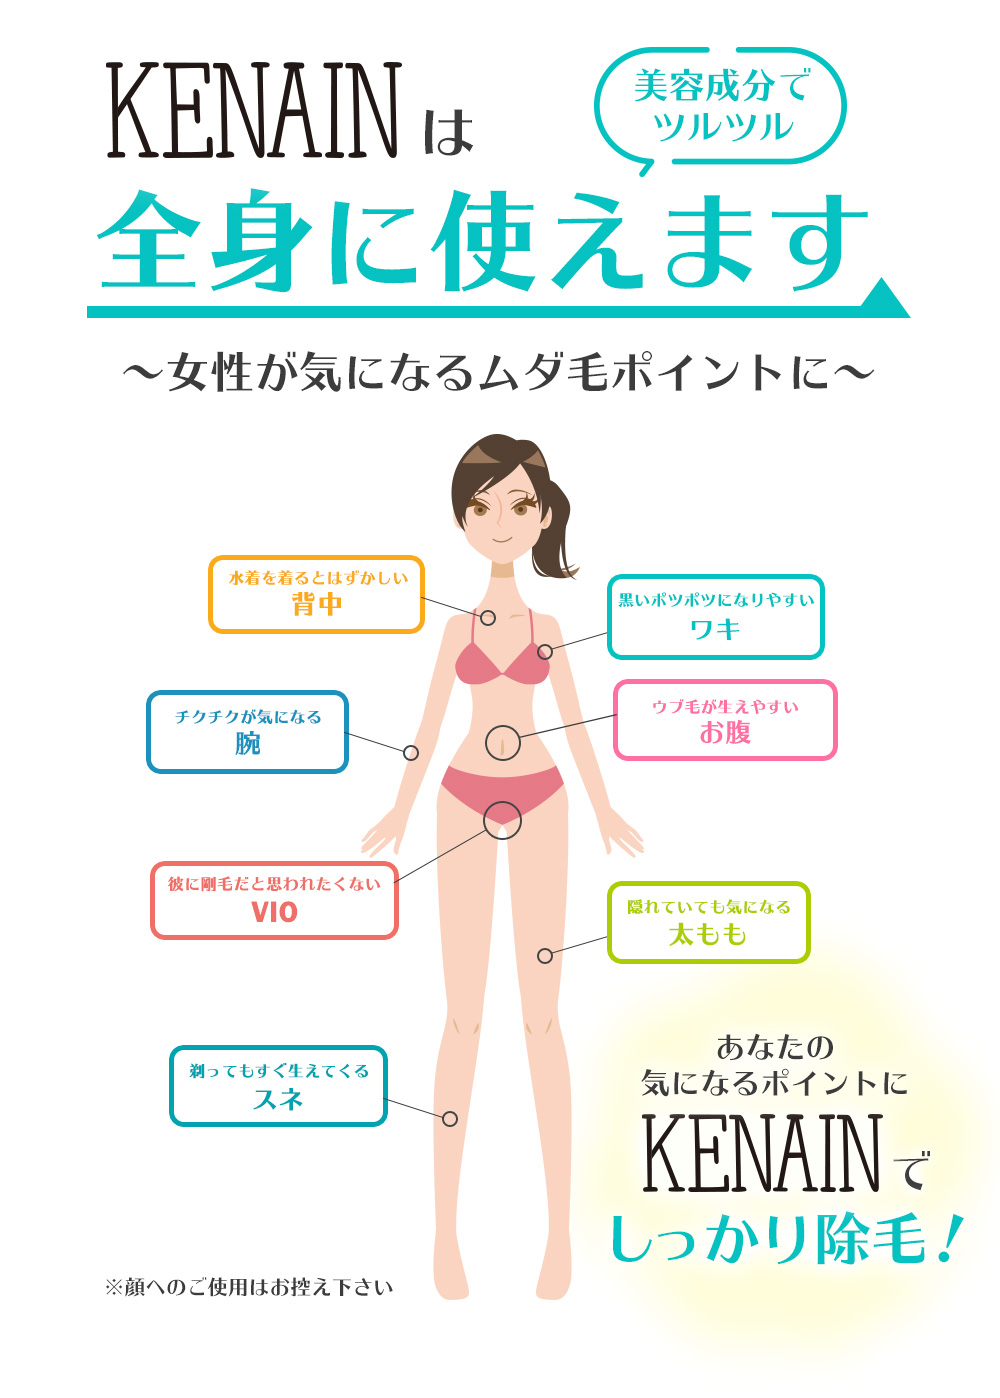 KENAINは全身に使えます〜女性が気になるムダ毛ポイントに〜背中、腕、ワキ、お腹、VIO、太もも、スネに。あなたの気になるポイントにKENAINでしっかり除毛！※顔へのご使用はお控え下さい